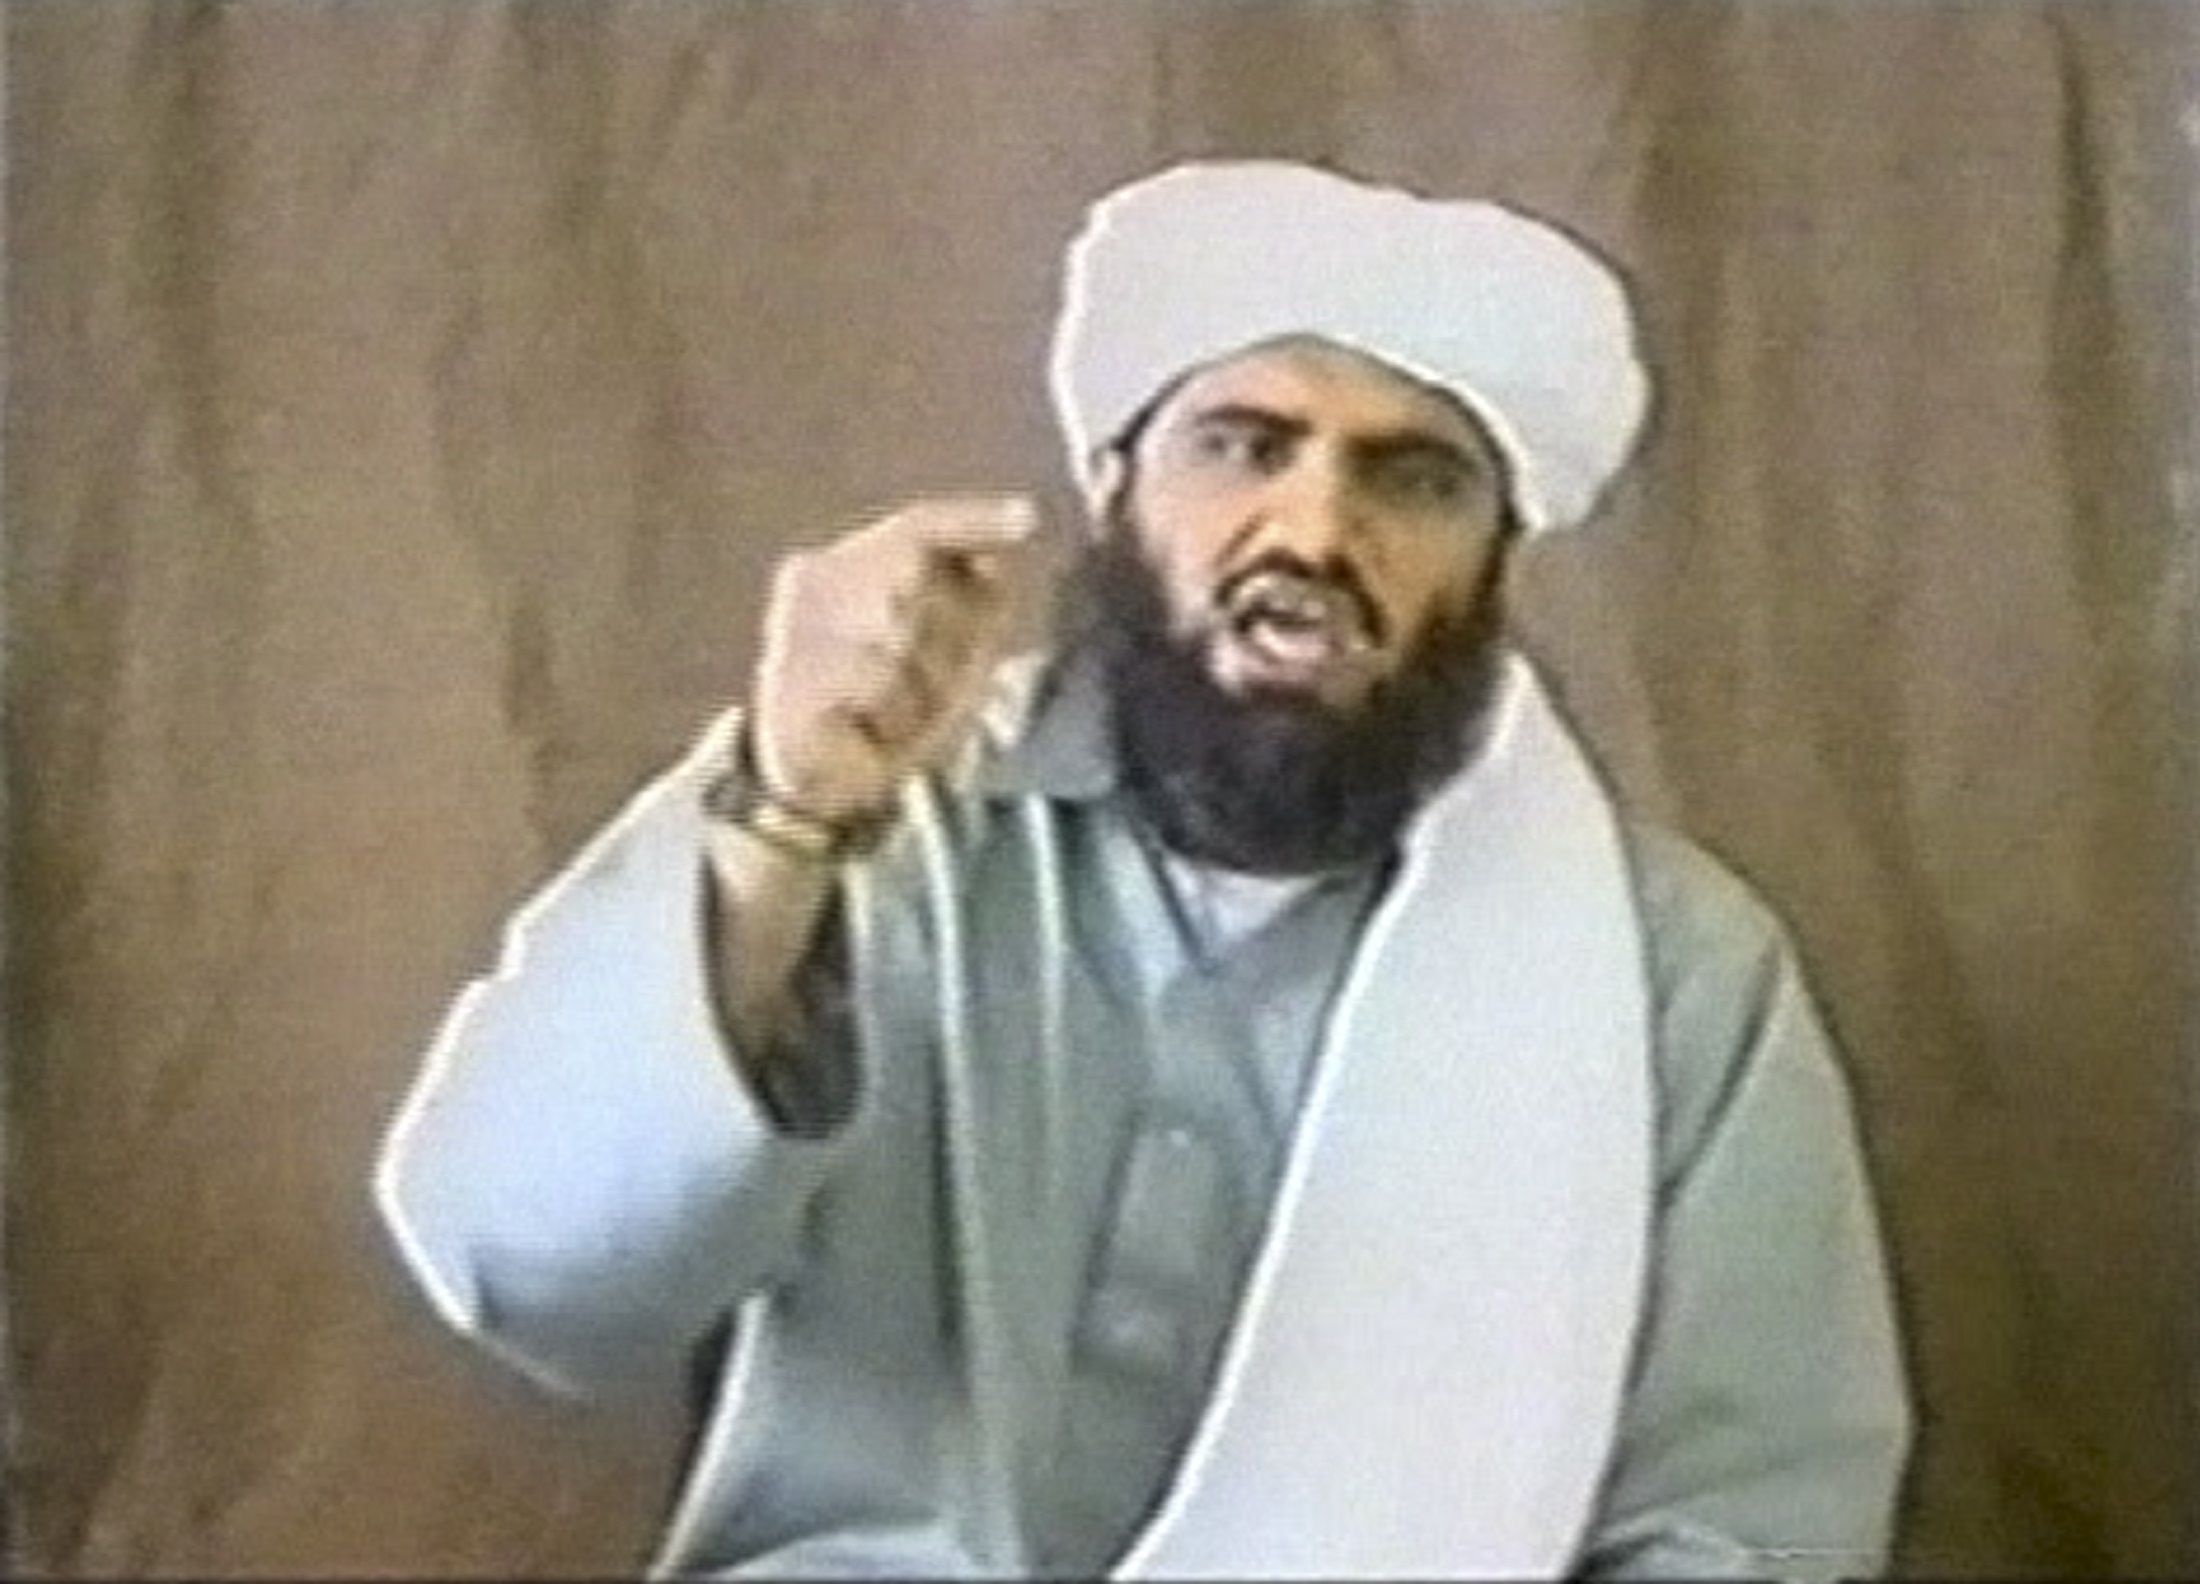 Suleiman Abu Ghaith 